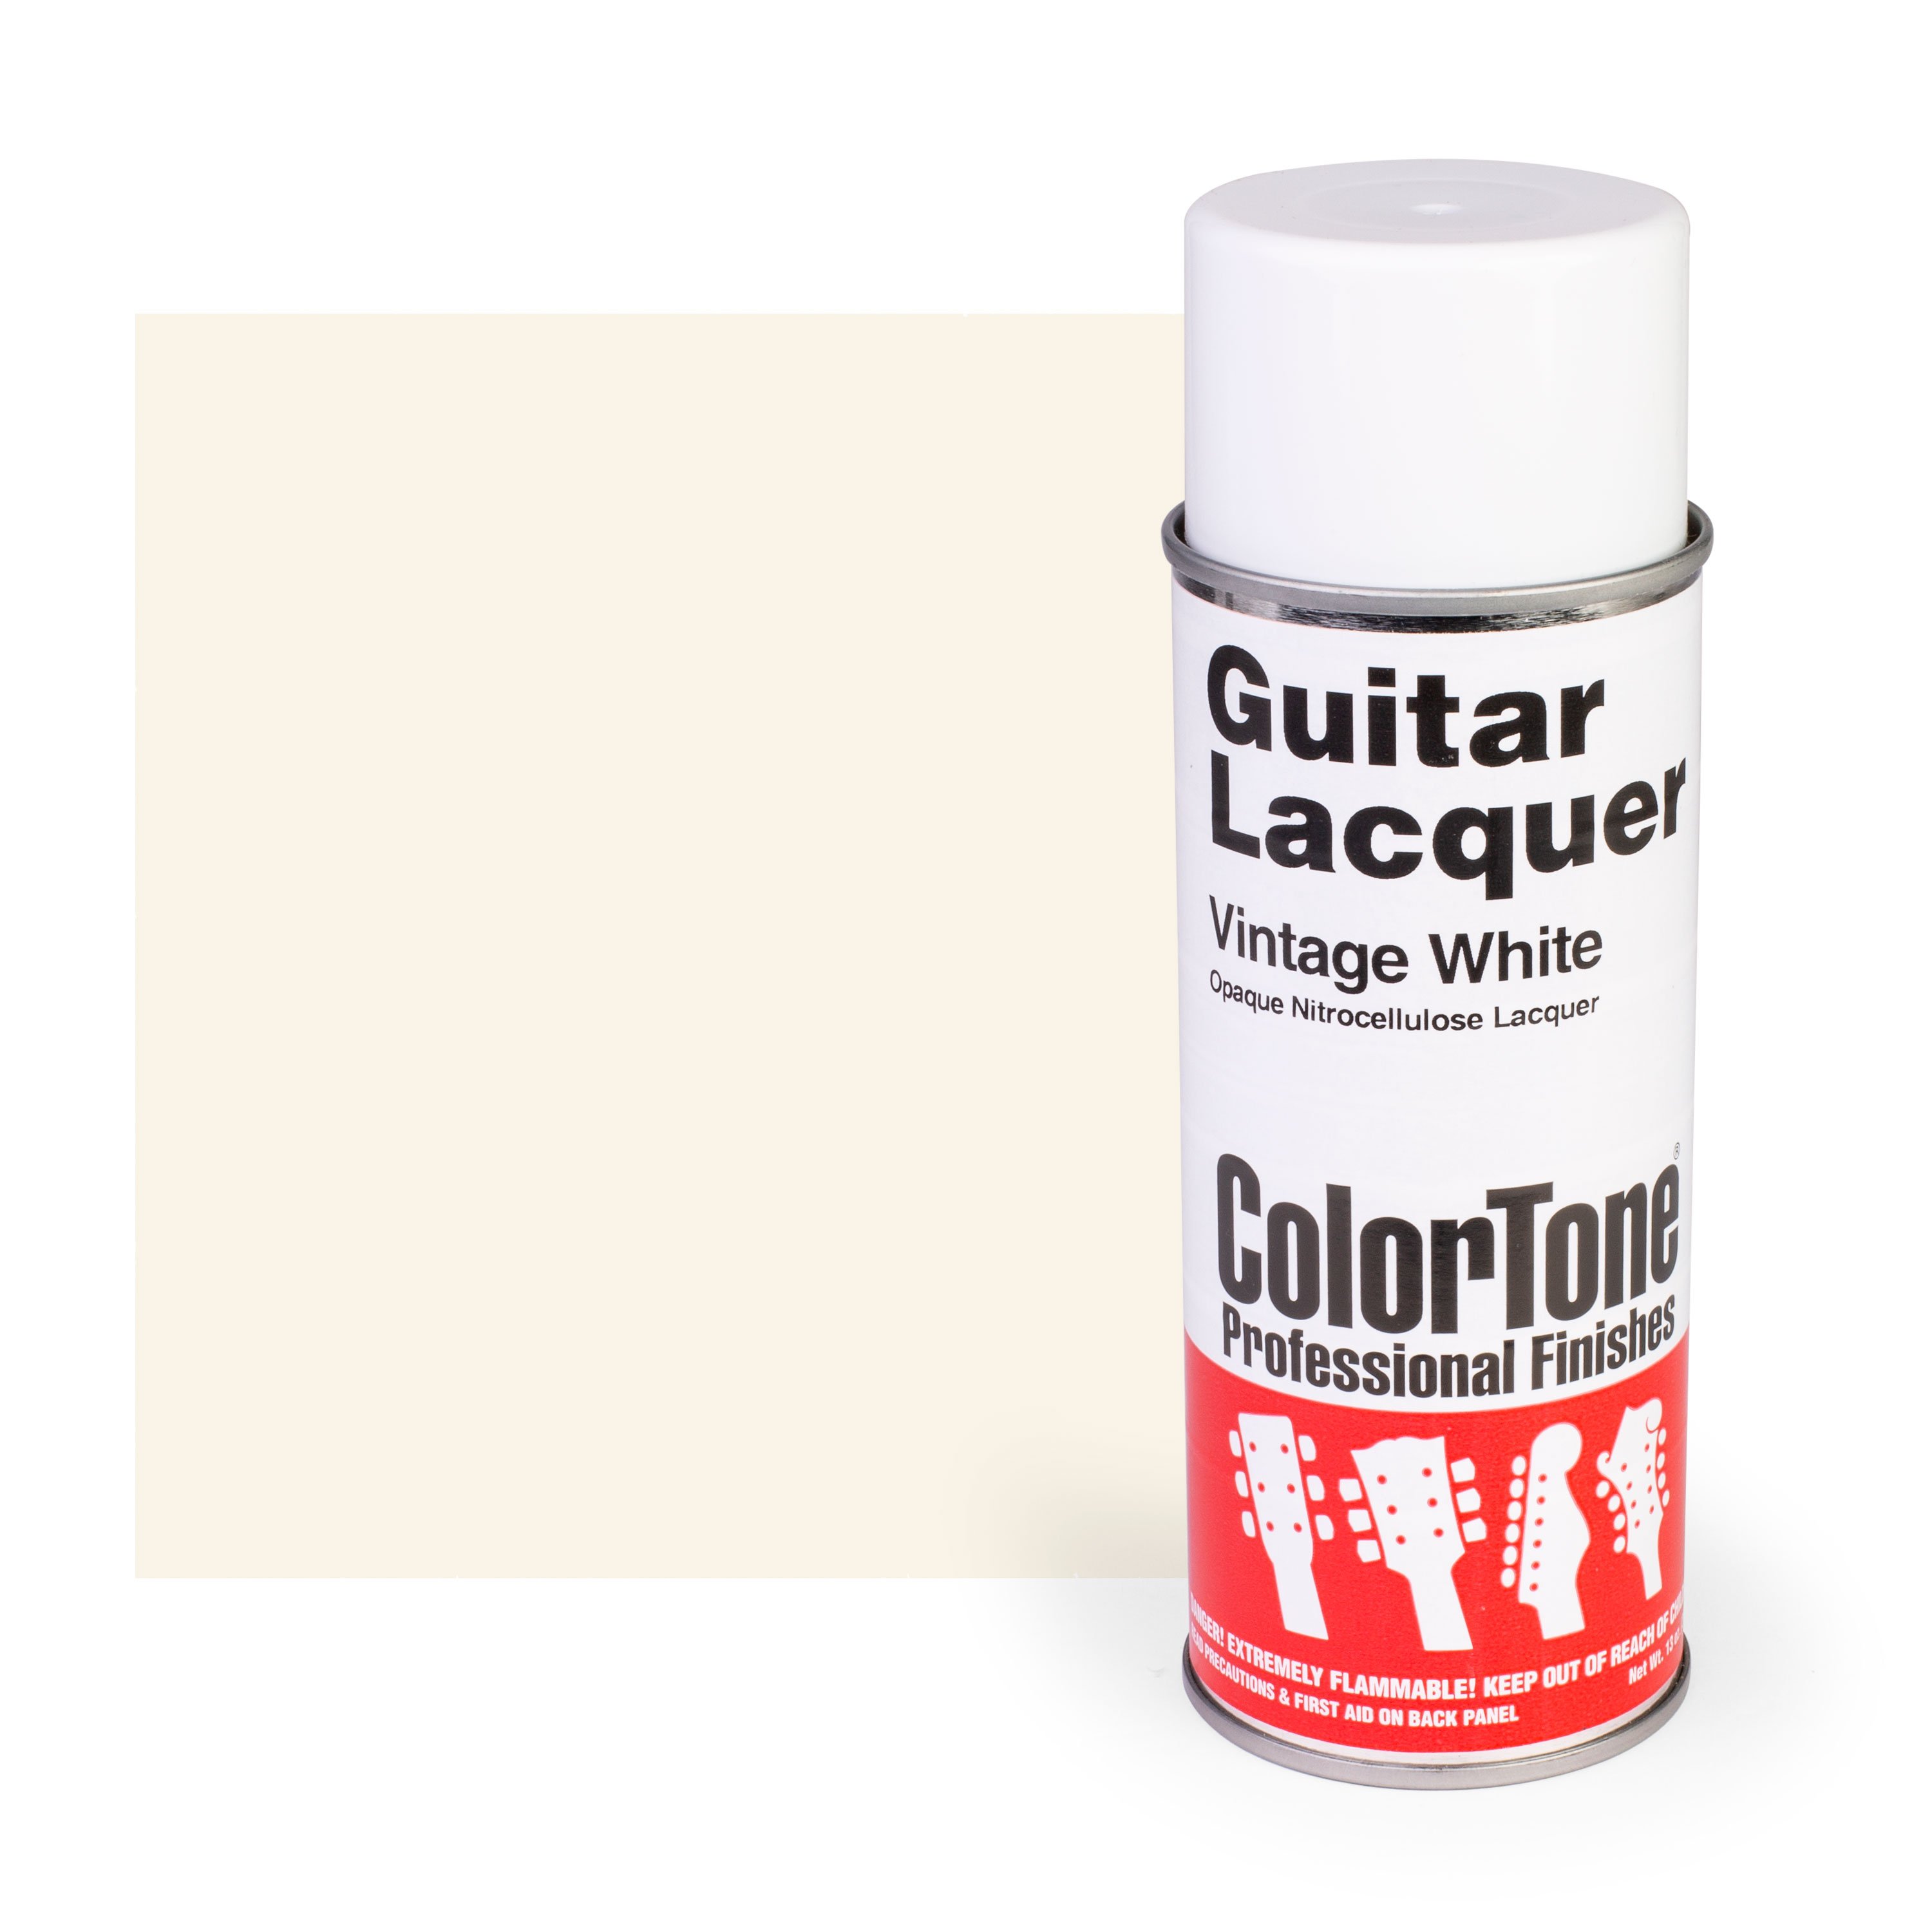 ColorTone Vintage White Aerosol Guitar Lacquer